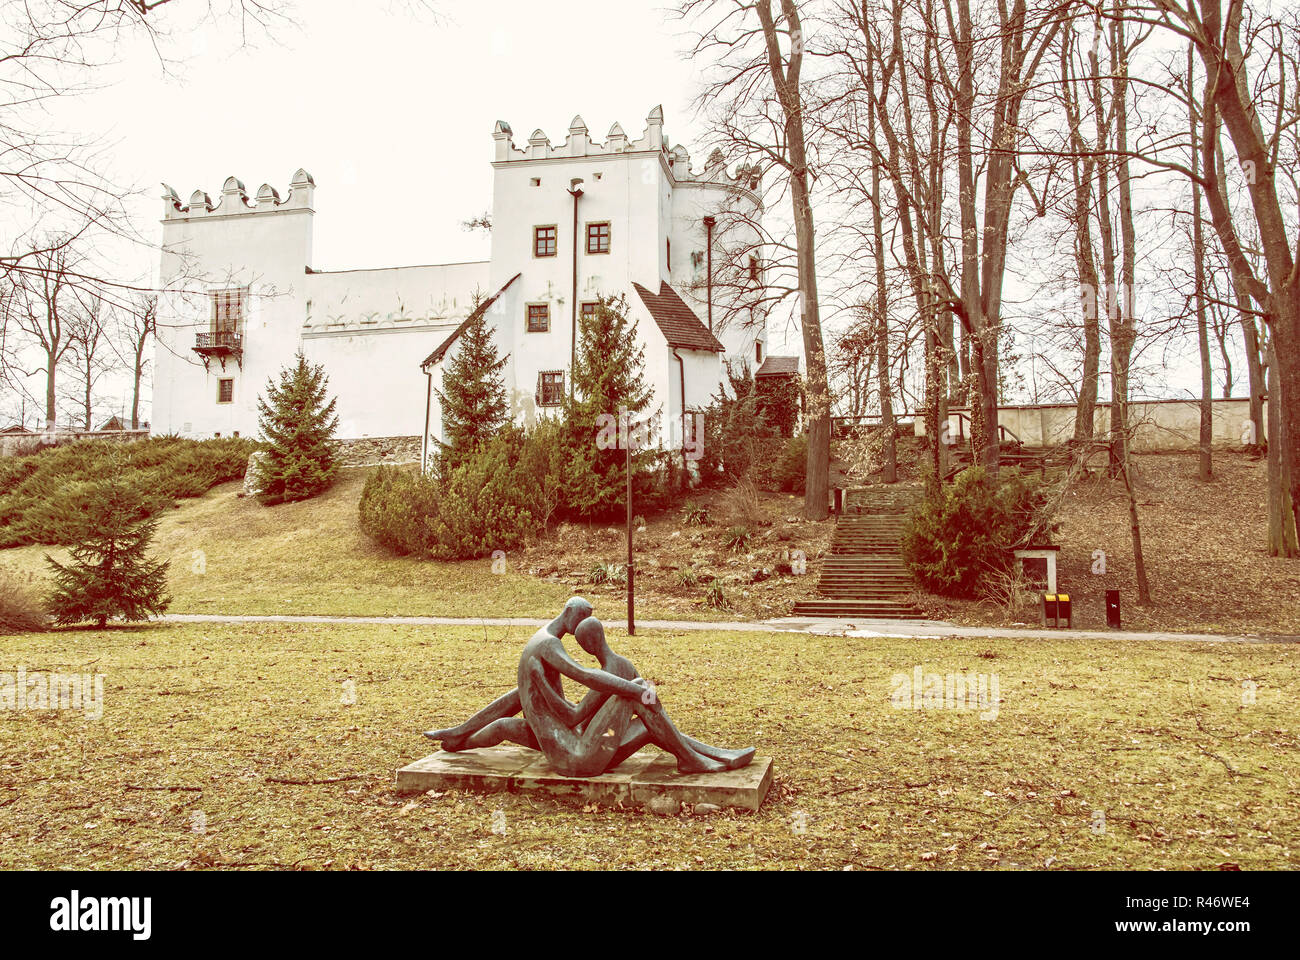 Très beau château Strazky, République Slovaque. Patrimoine culturel. Thème de l'architecture. Statue d'amants. Filtre photo jaune. Banque D'Images